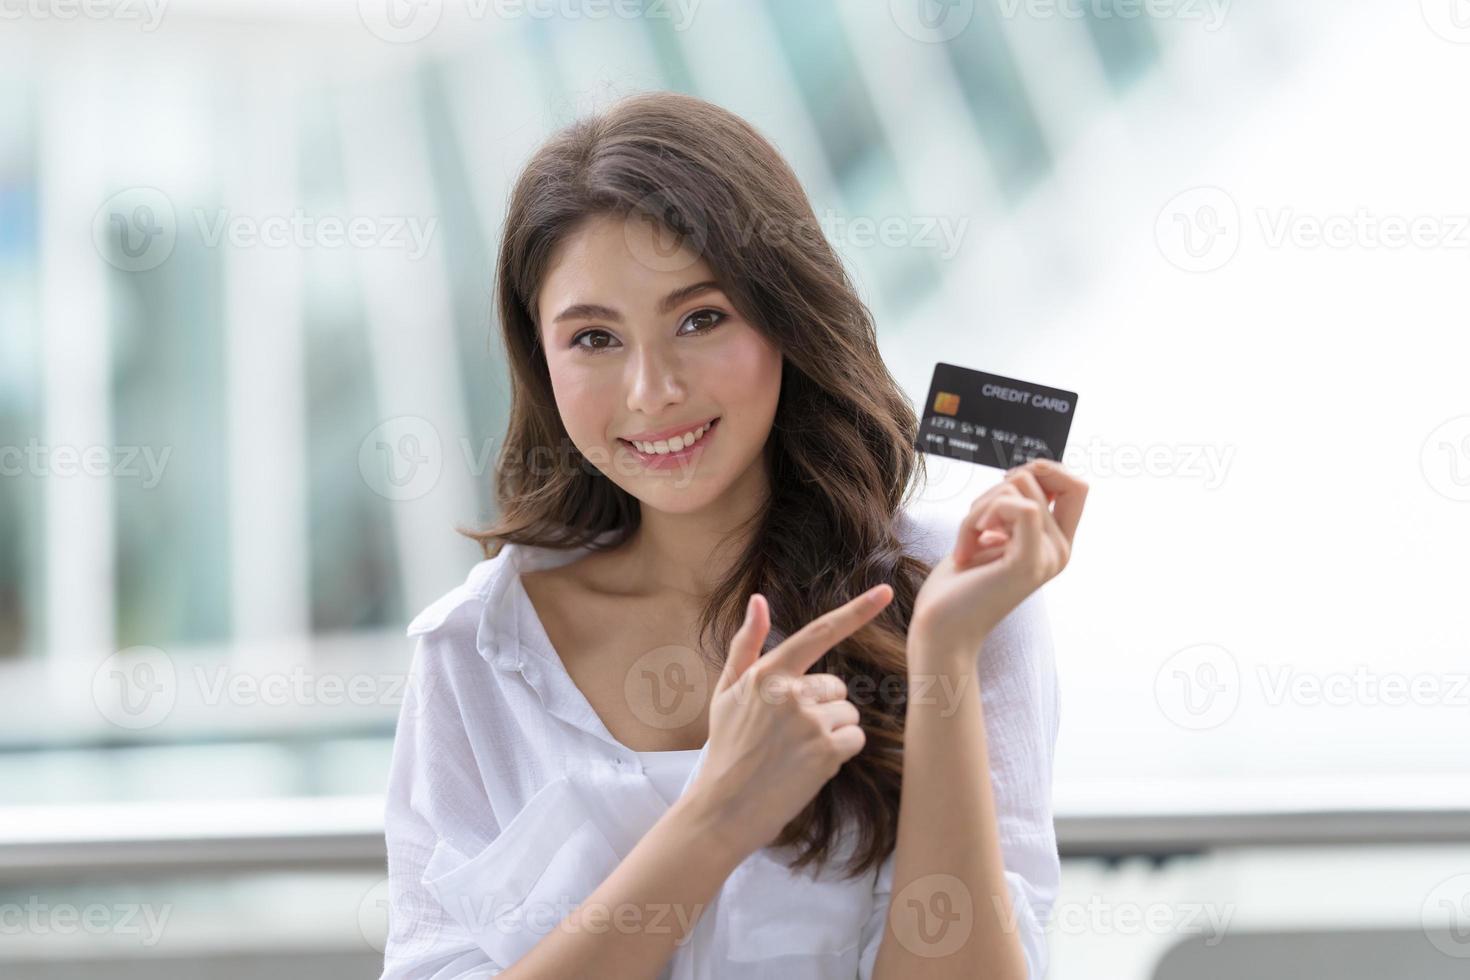 concept de vendredi noir, femme tenant une carte de crédit et souriant près du magasin photo